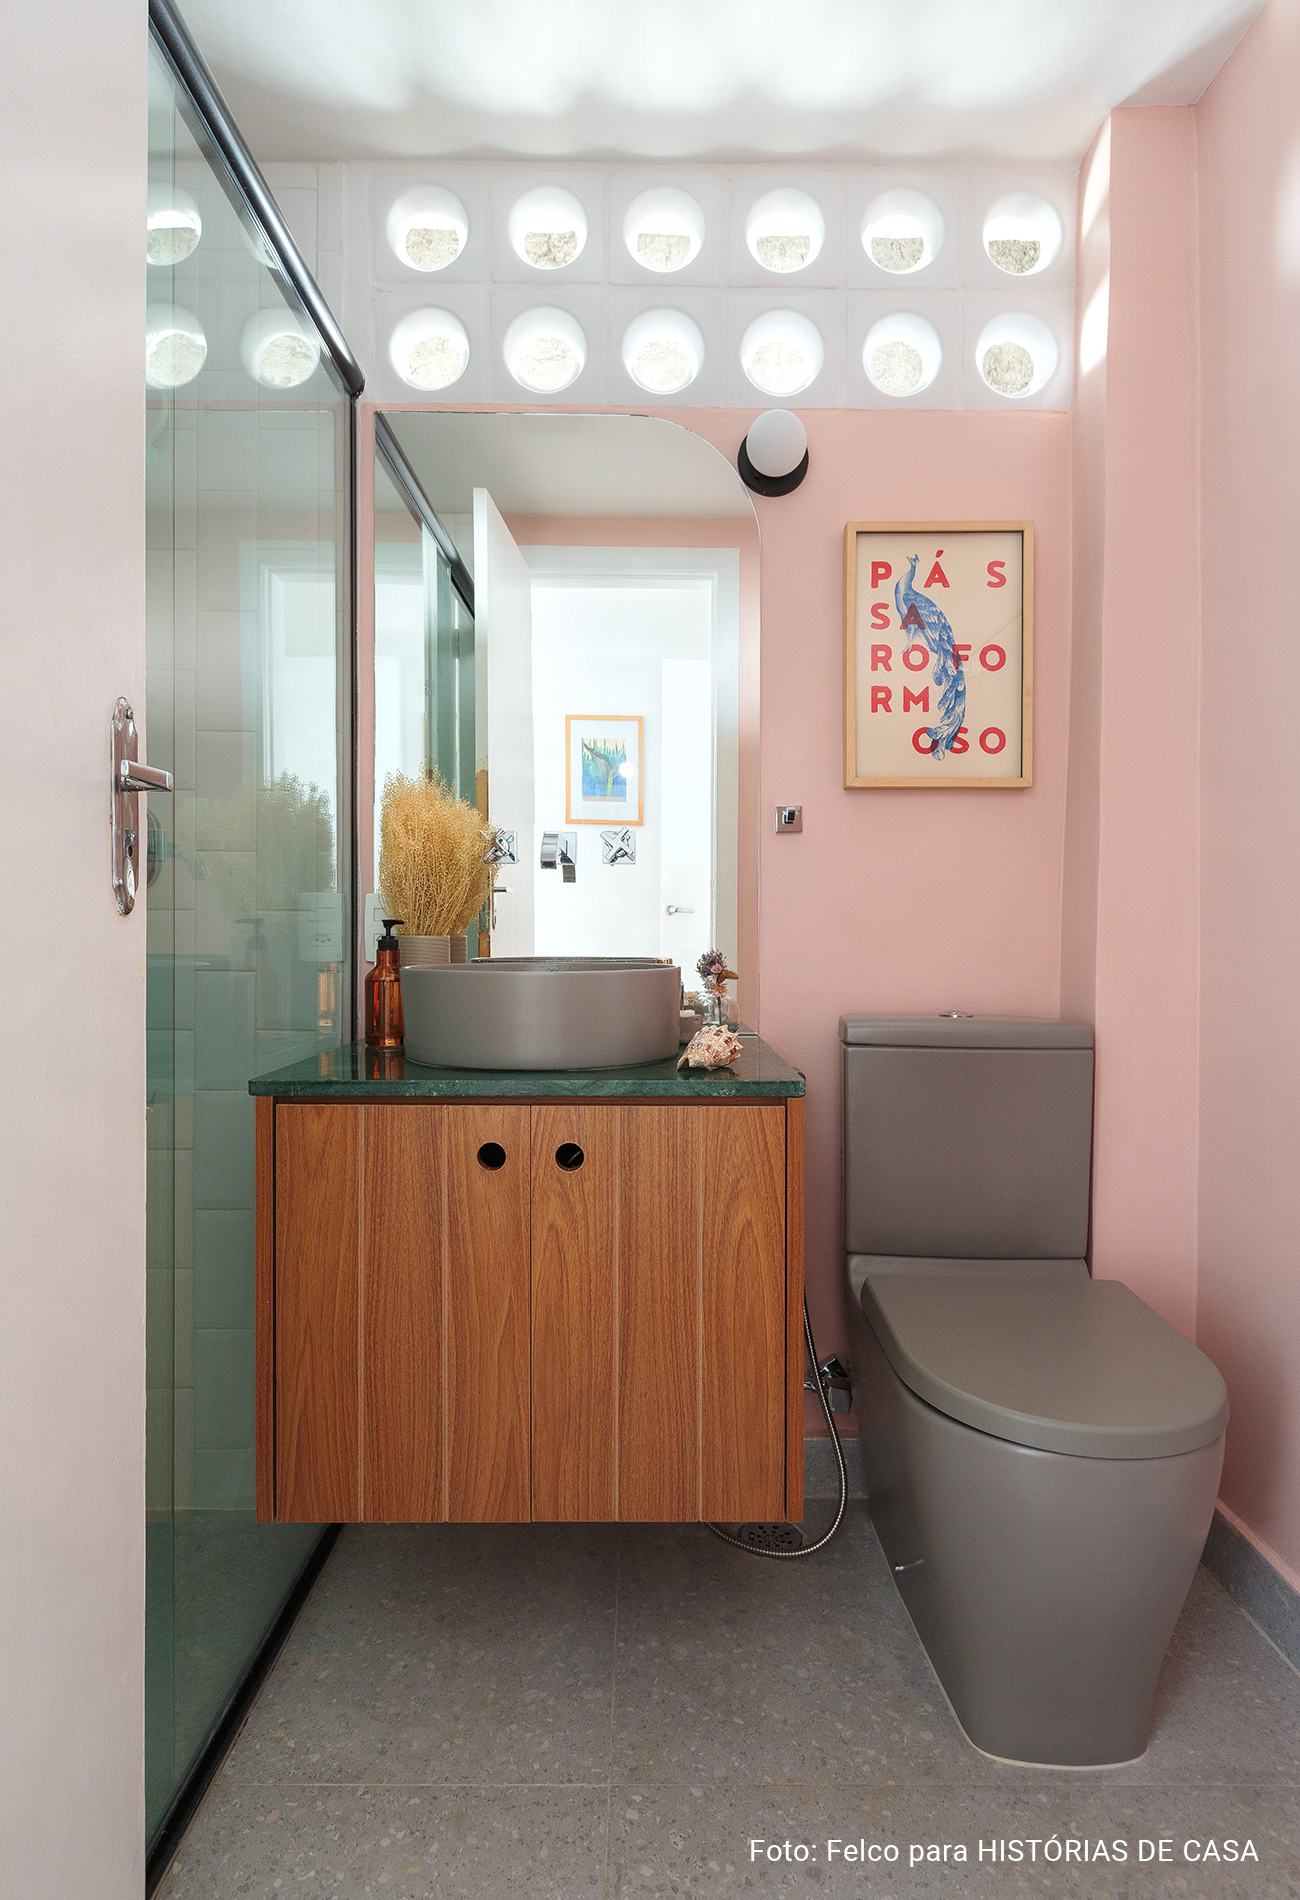 Apartamento com cozinha integrada e decoração colorida, banheiro colorido